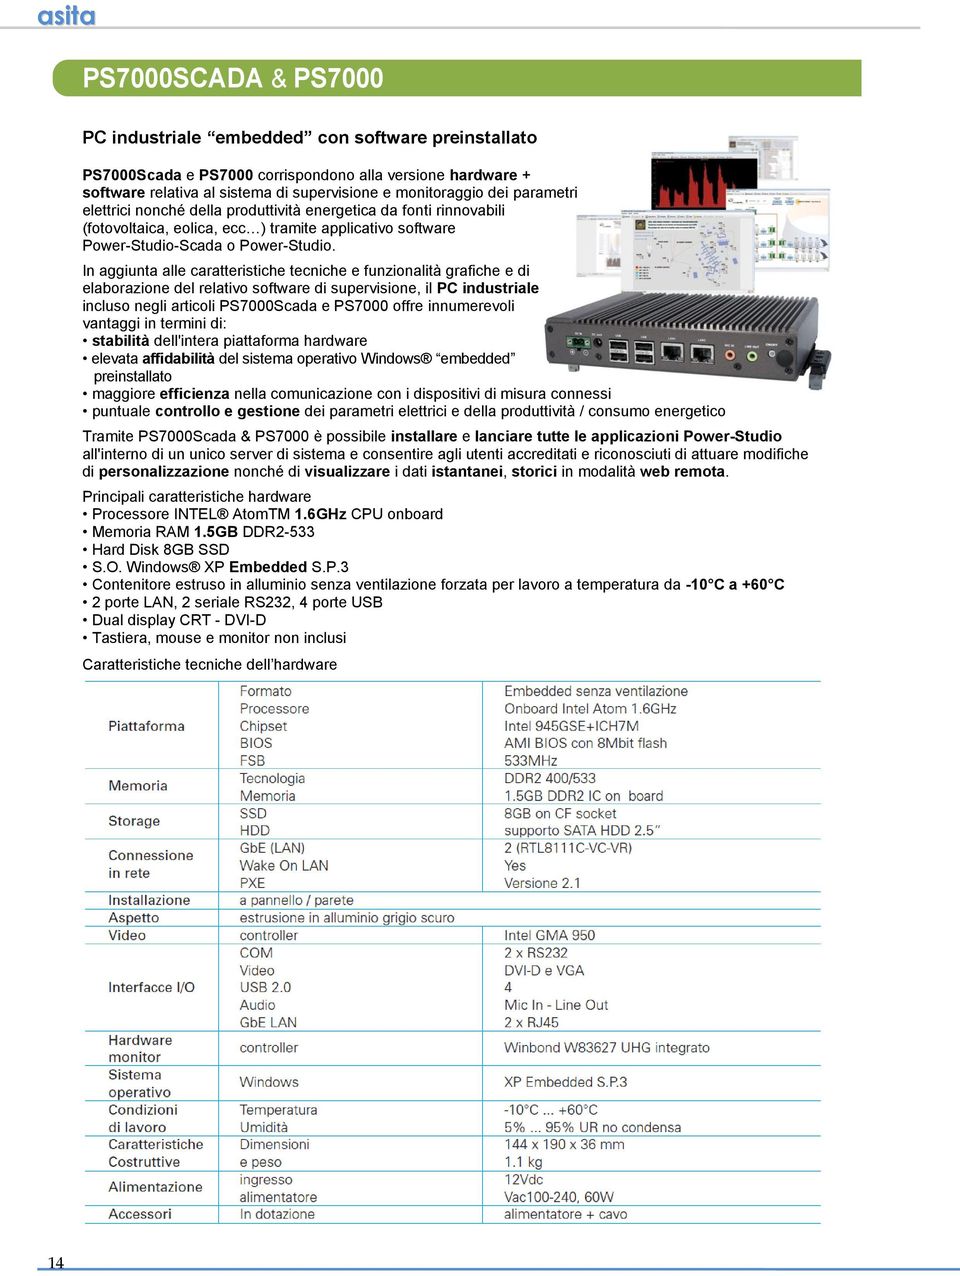 In aggiunta alle caratteristiche tecniche e funzionalità grafiche e di elaborazione del relativo software di supervisione, il PC industriale incluso negli articoli PS7000Scada e PS7000 offre